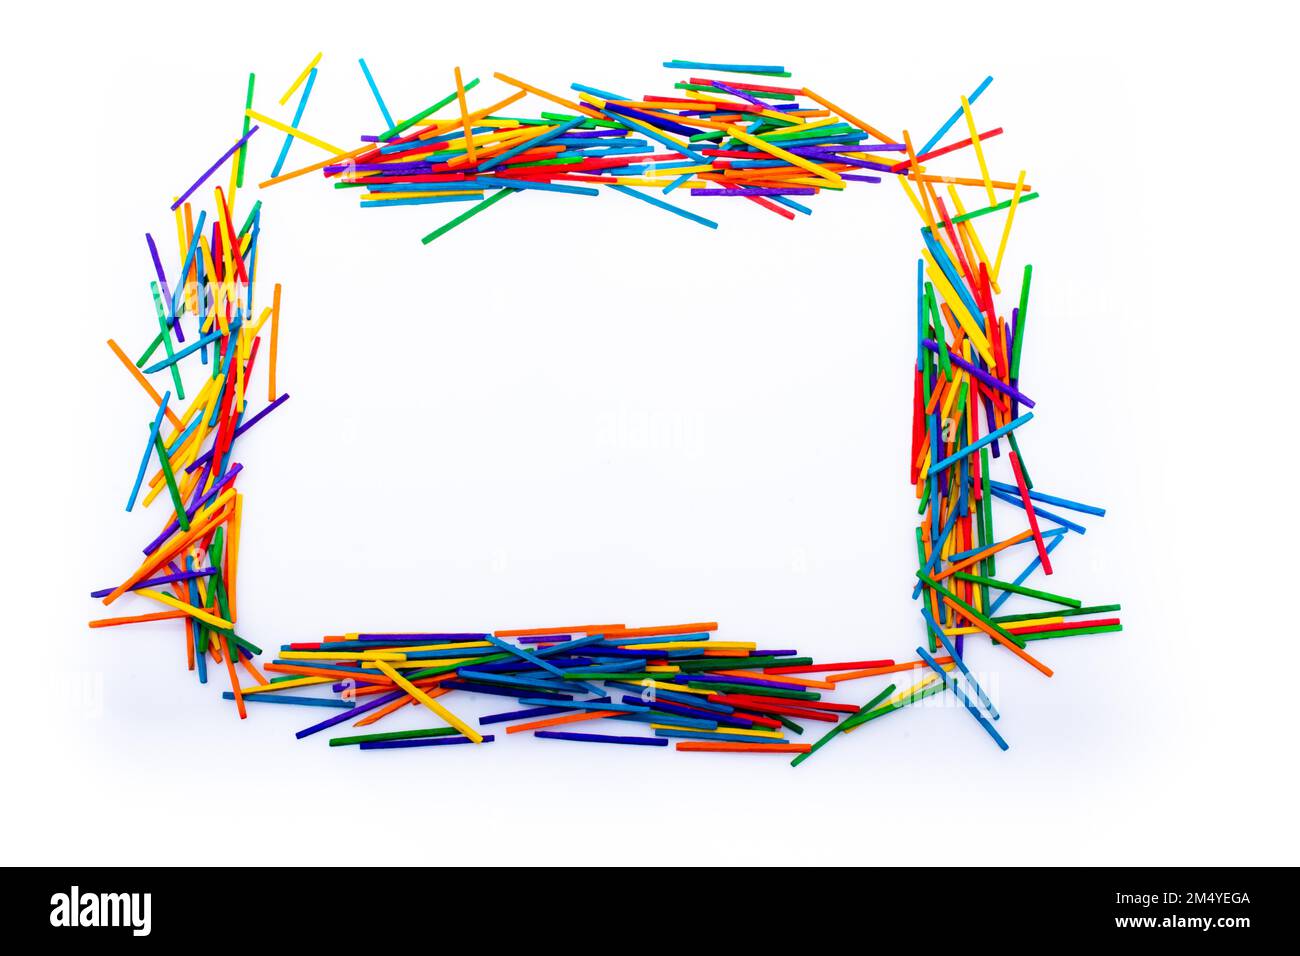 Les formes géométriques faites avec des bâtons colorés comme concept créatif Banque D'Images